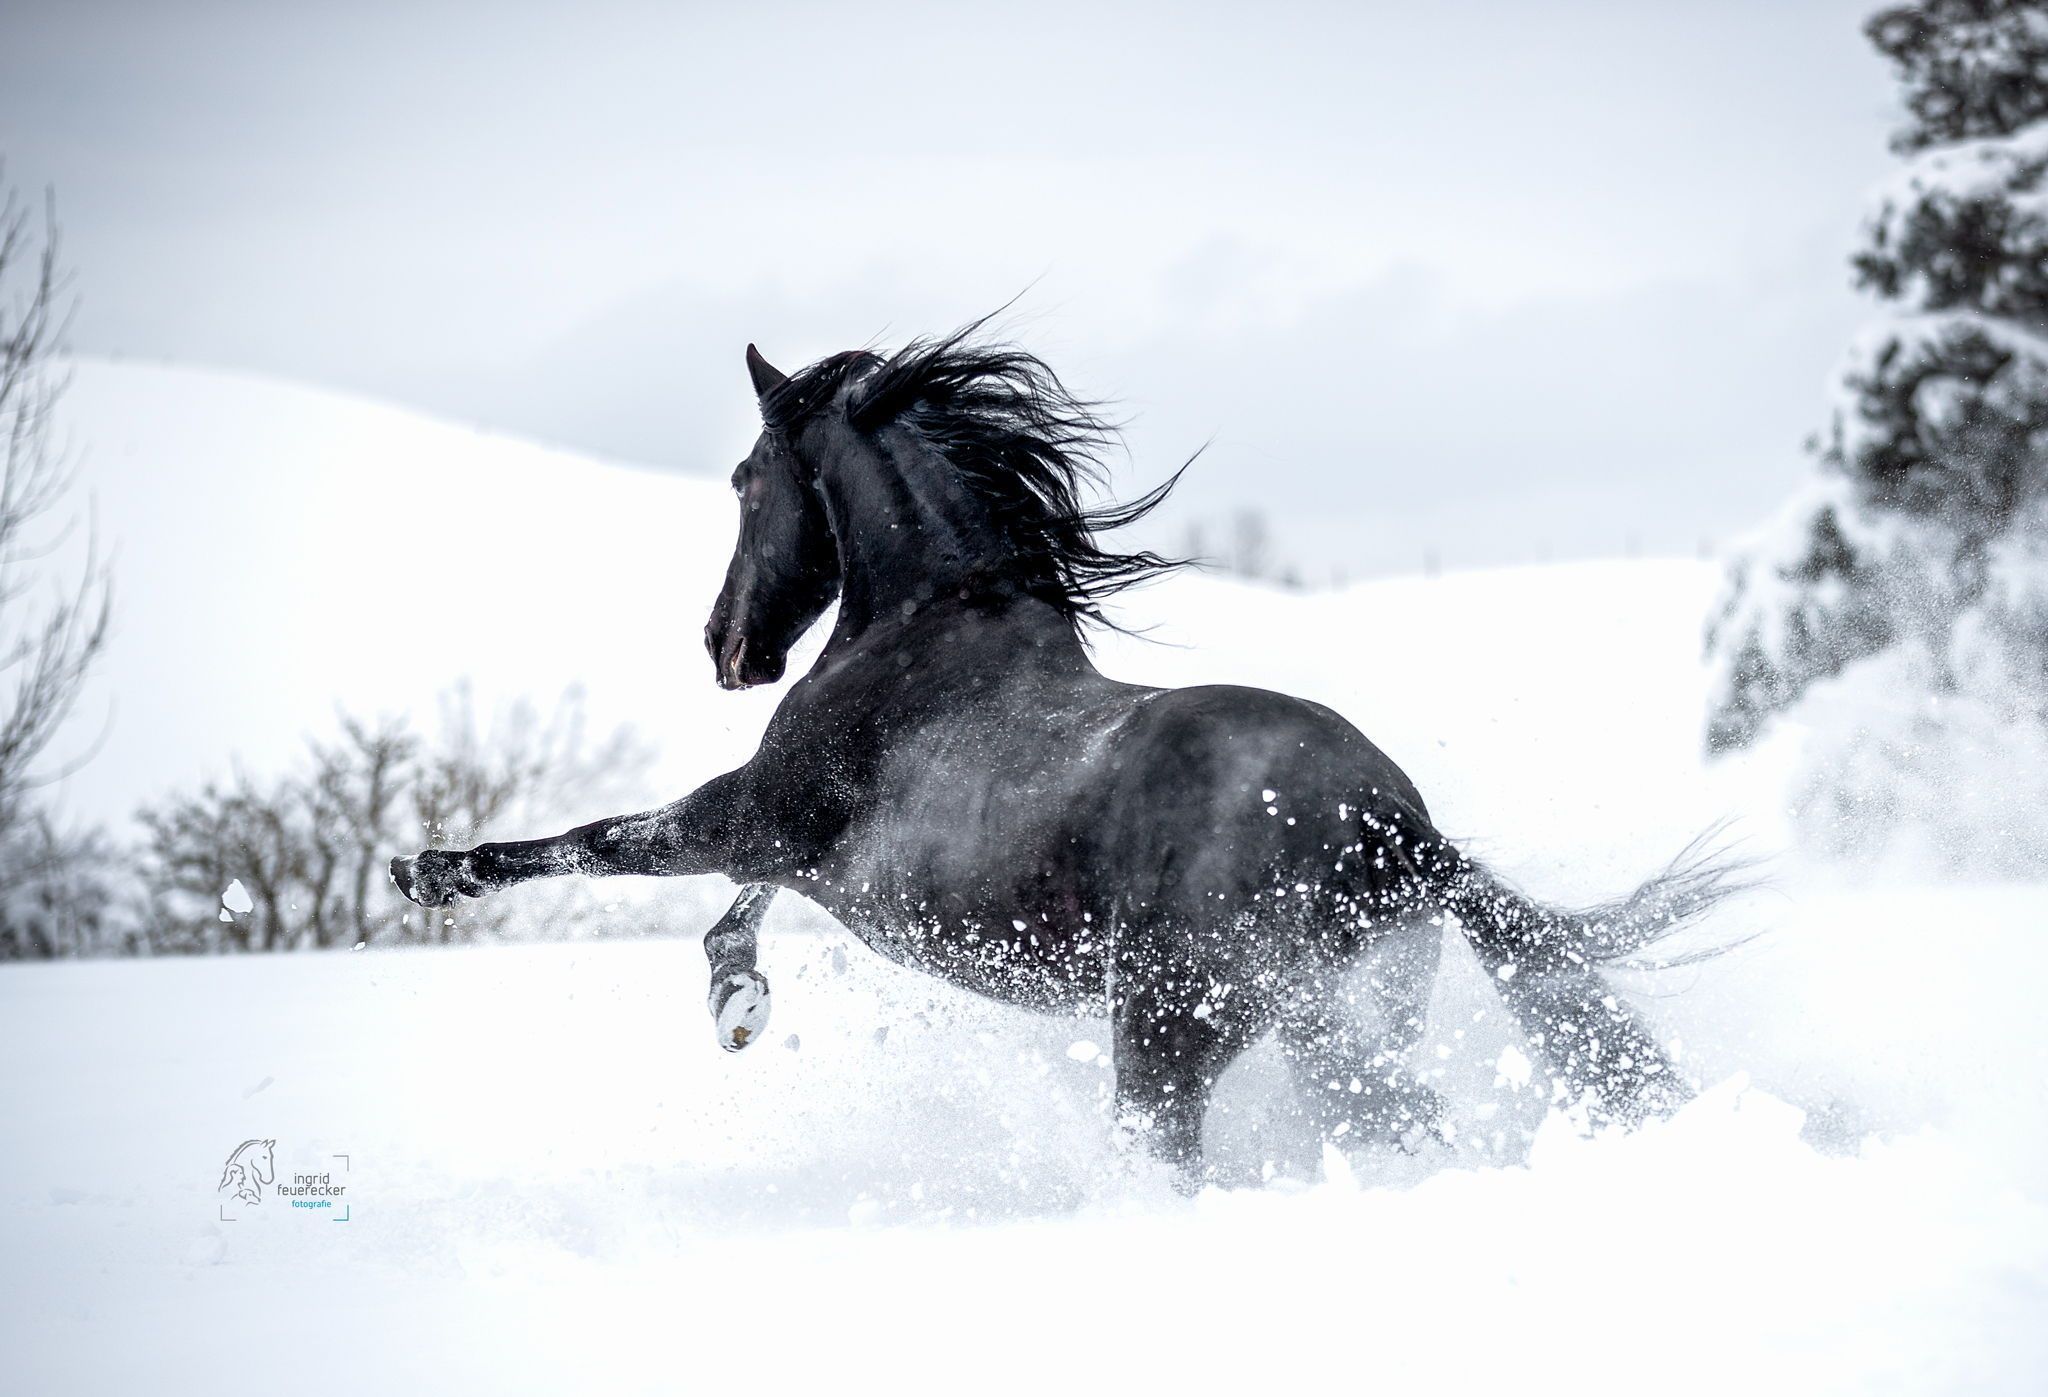  Pferde Im Schnee Hintergrundbild 2048x1397. Pferd galoppiert im Schnee. Pferde fotografie, Pferdefotografie, Friesenpferde